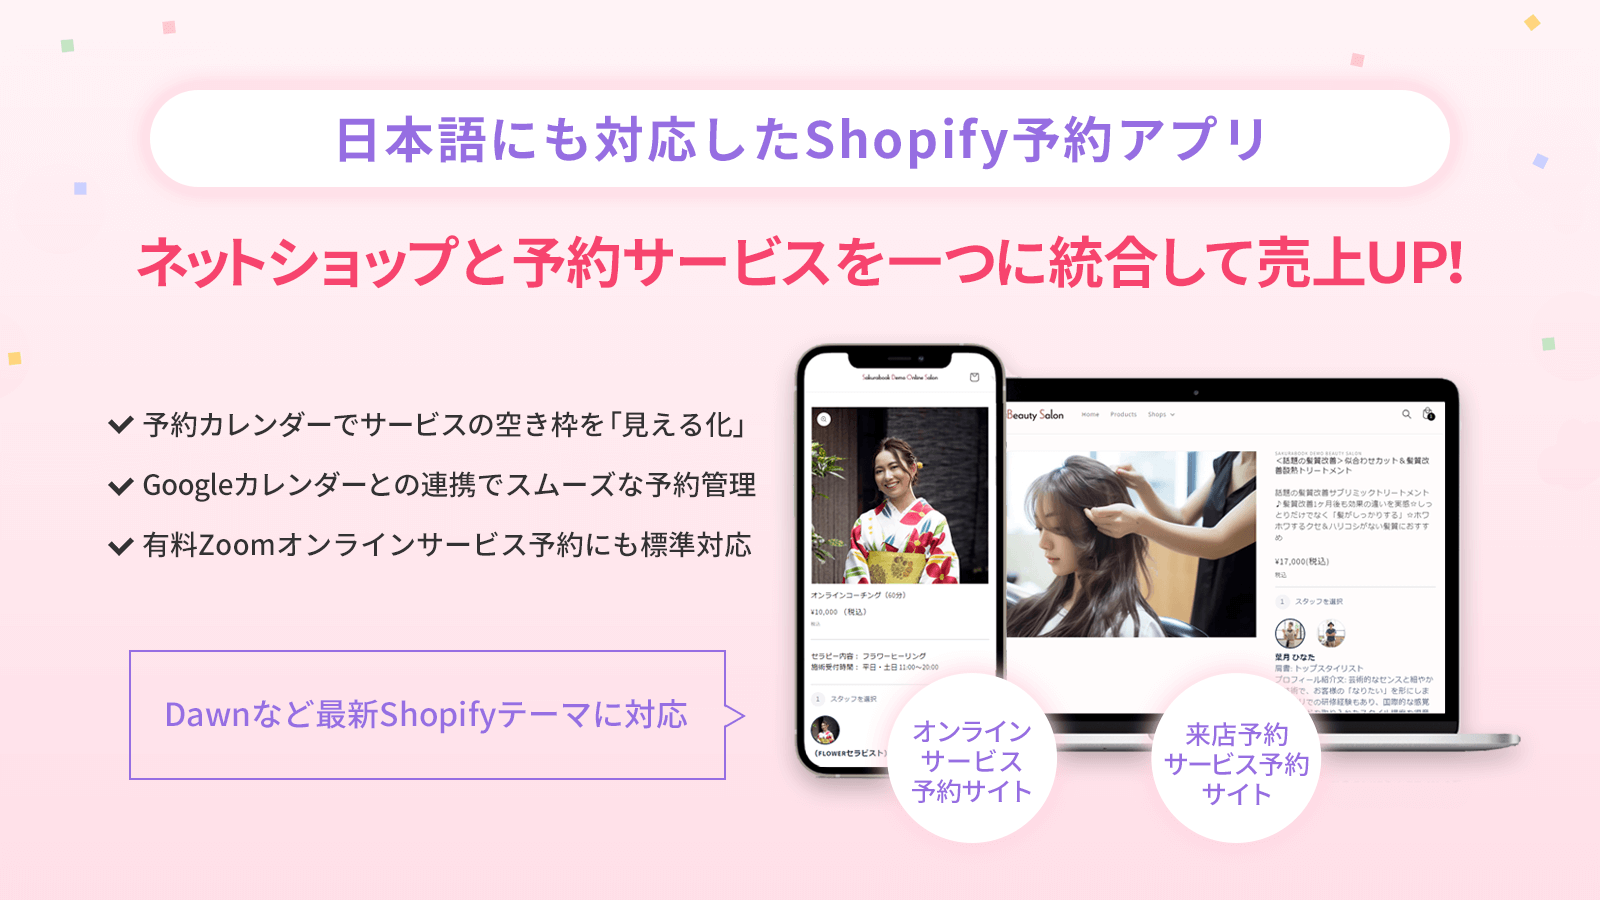 日本語にも対応したShopify予約アプリ「Sakurabook」でネットショップと予約サービスと一つに統合して売上UP